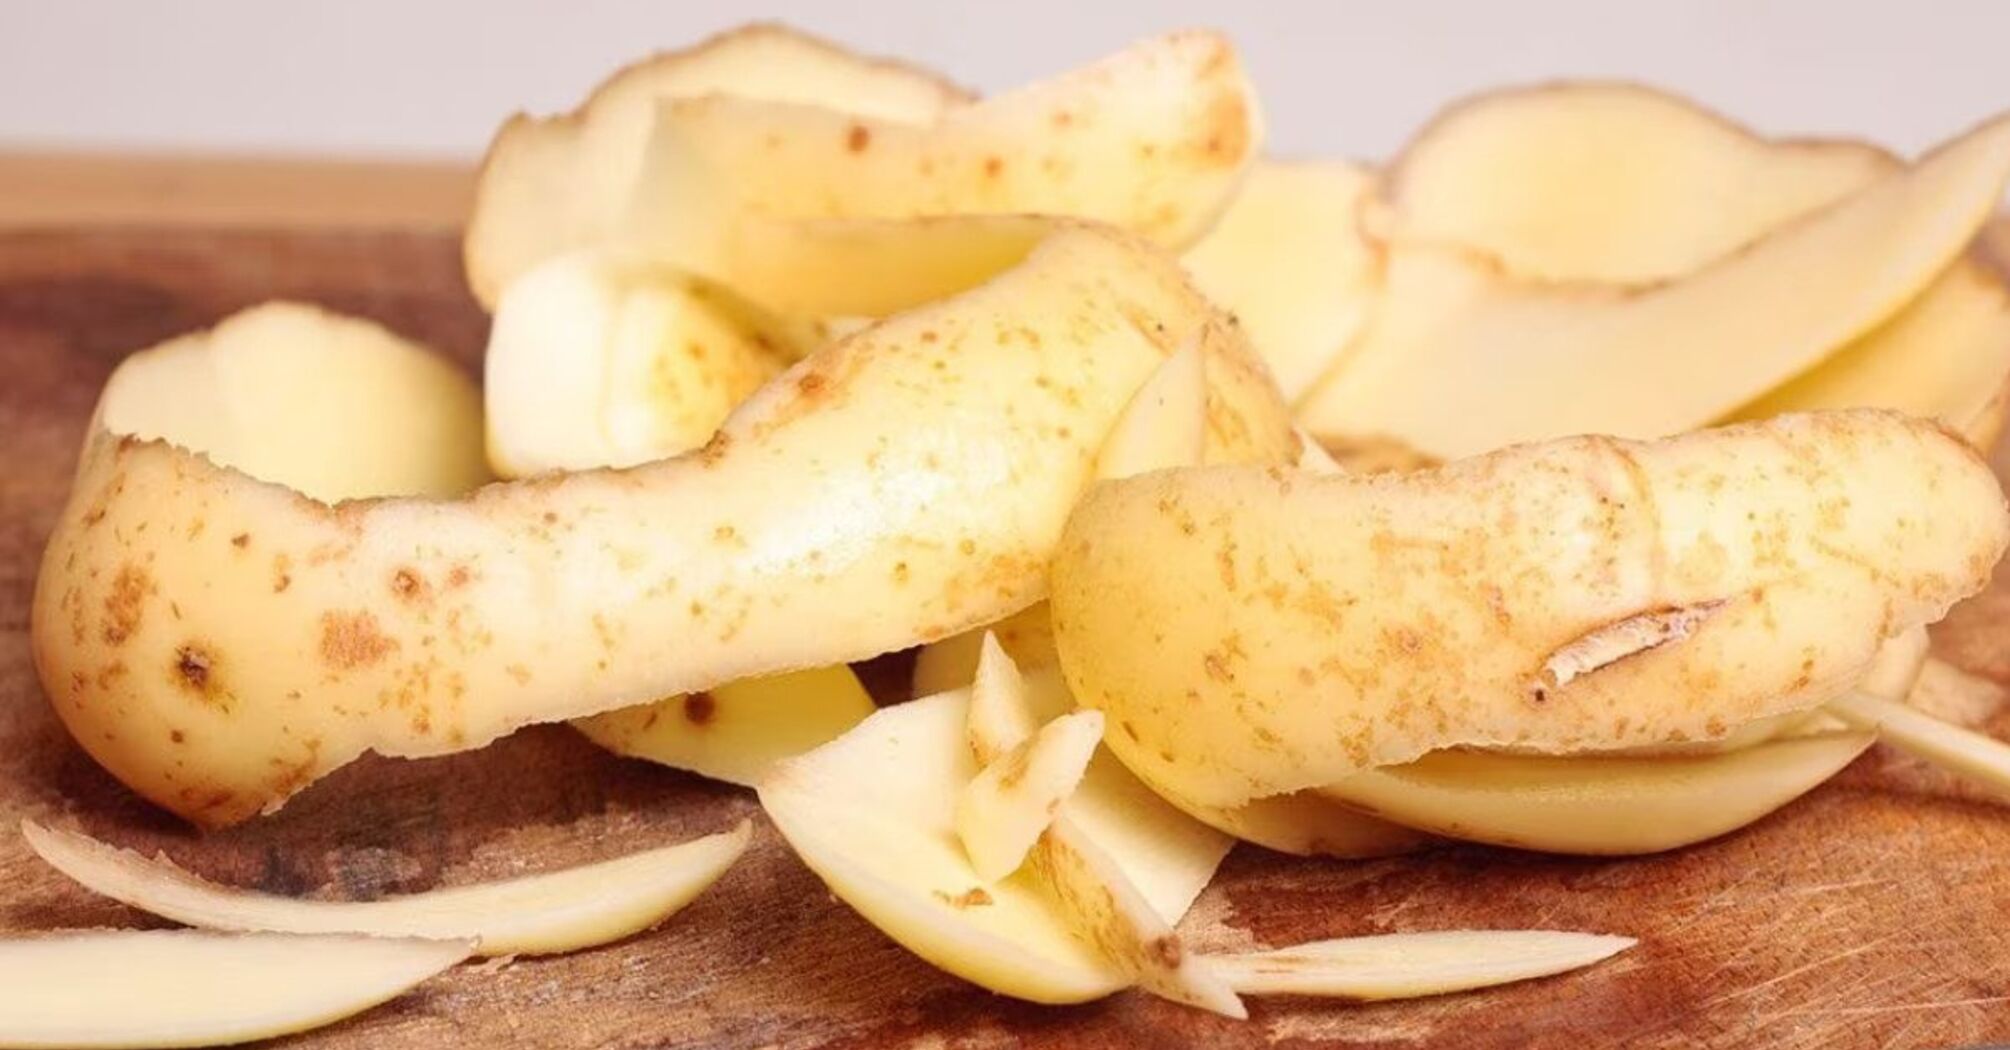 Don't throw away potato peelings